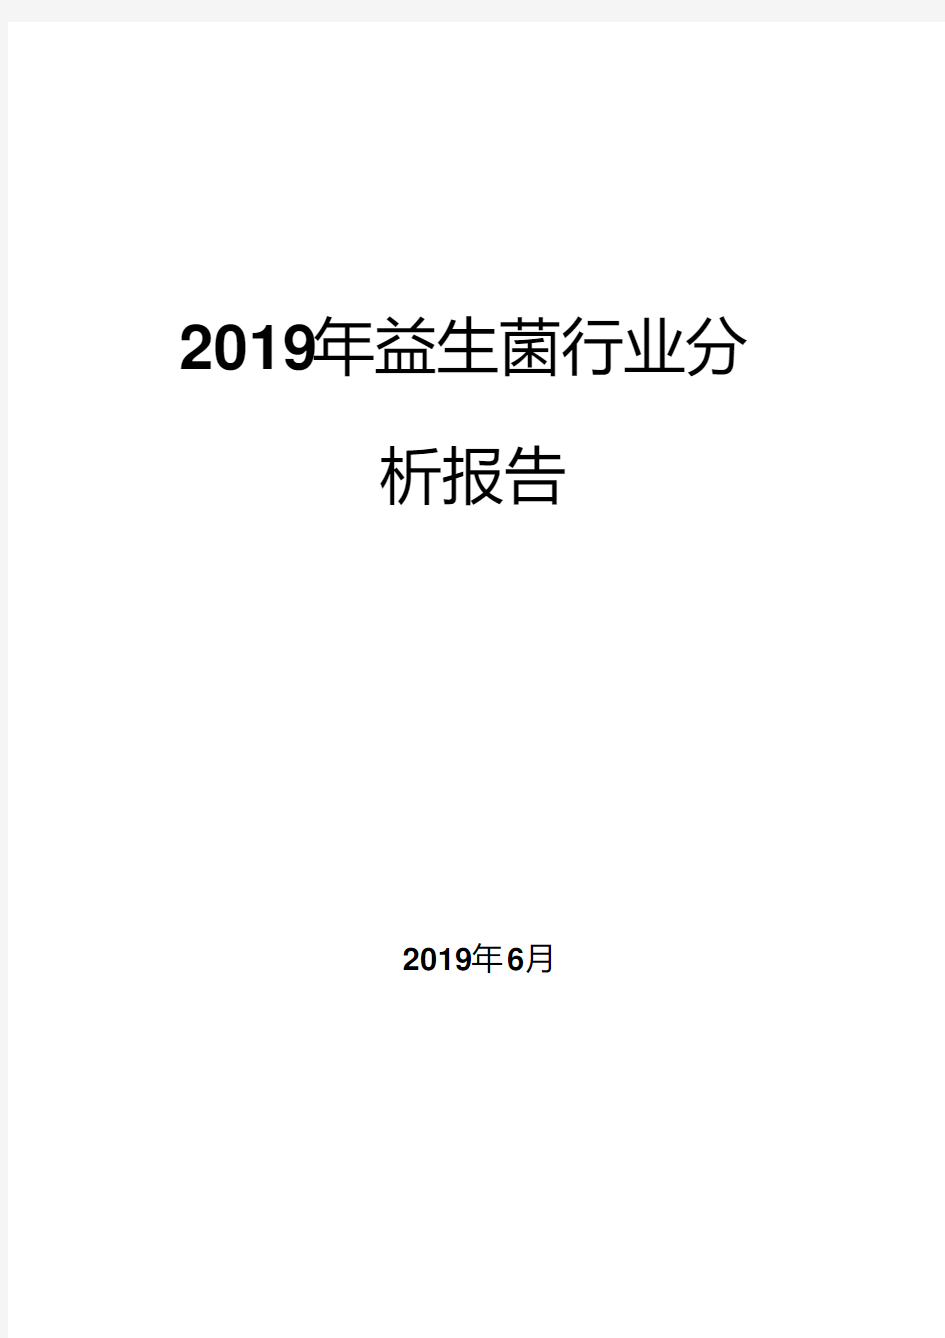 2019年益生菌行业分析报告